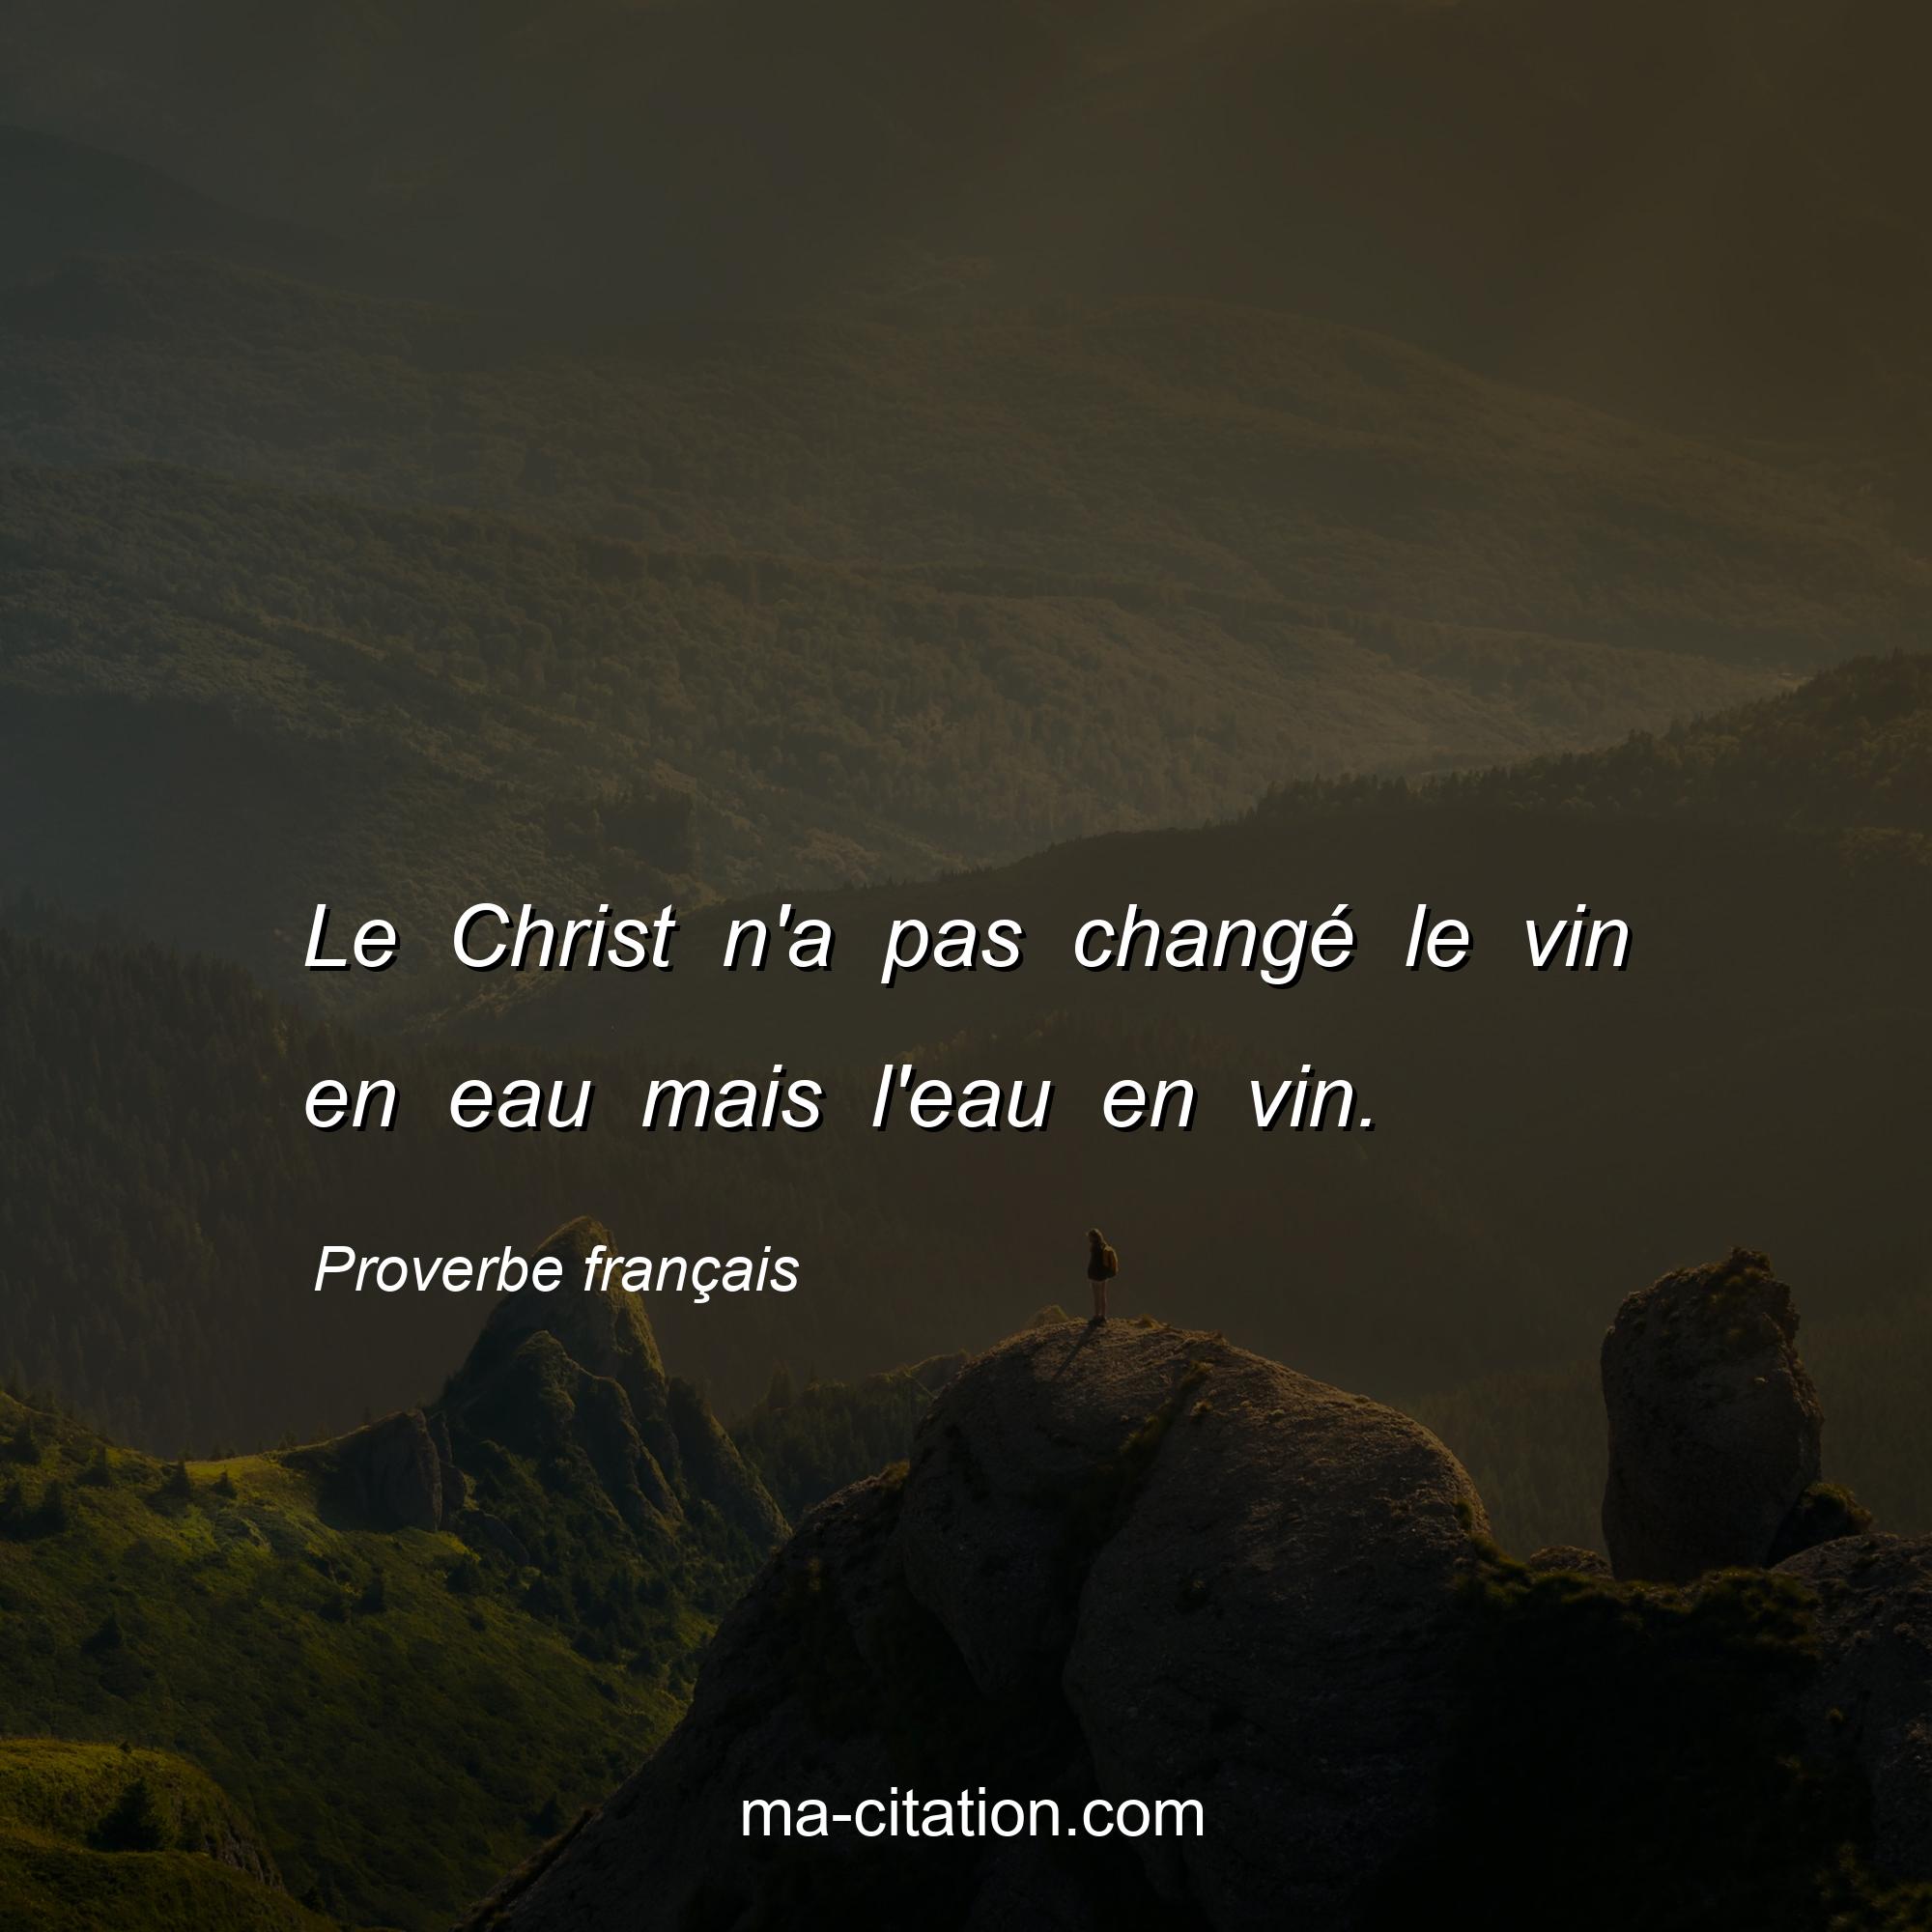 Proverbe français : Le Christ n'a pas changé le vin en eau mais l'eau en vin.